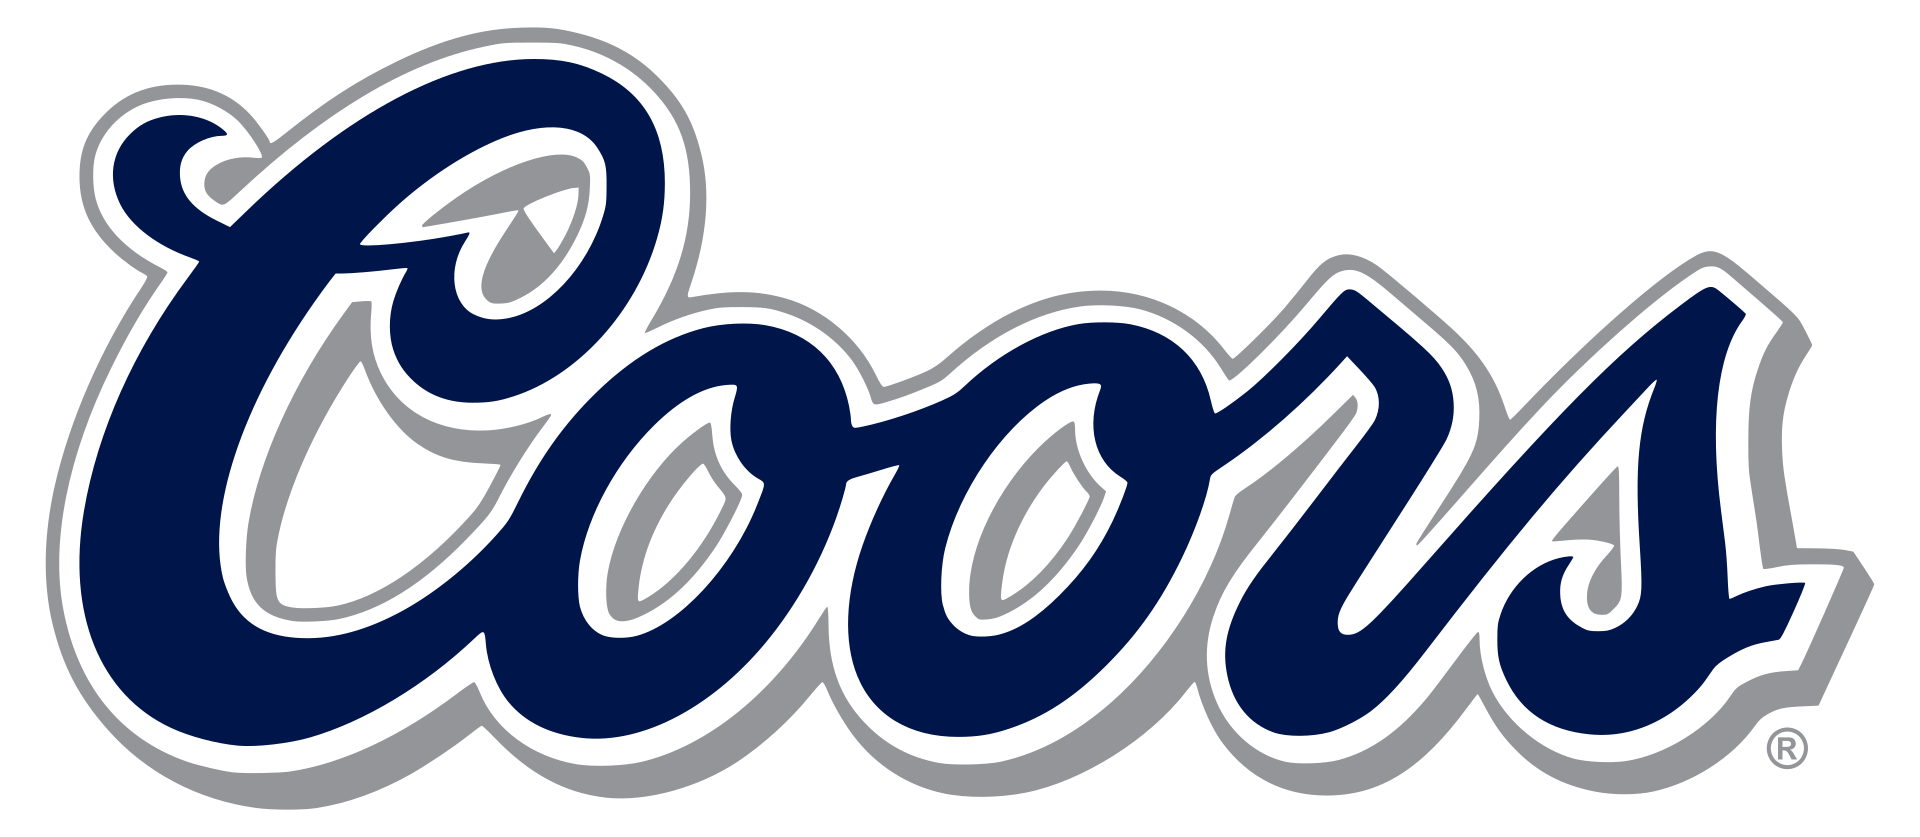 coors beer logo